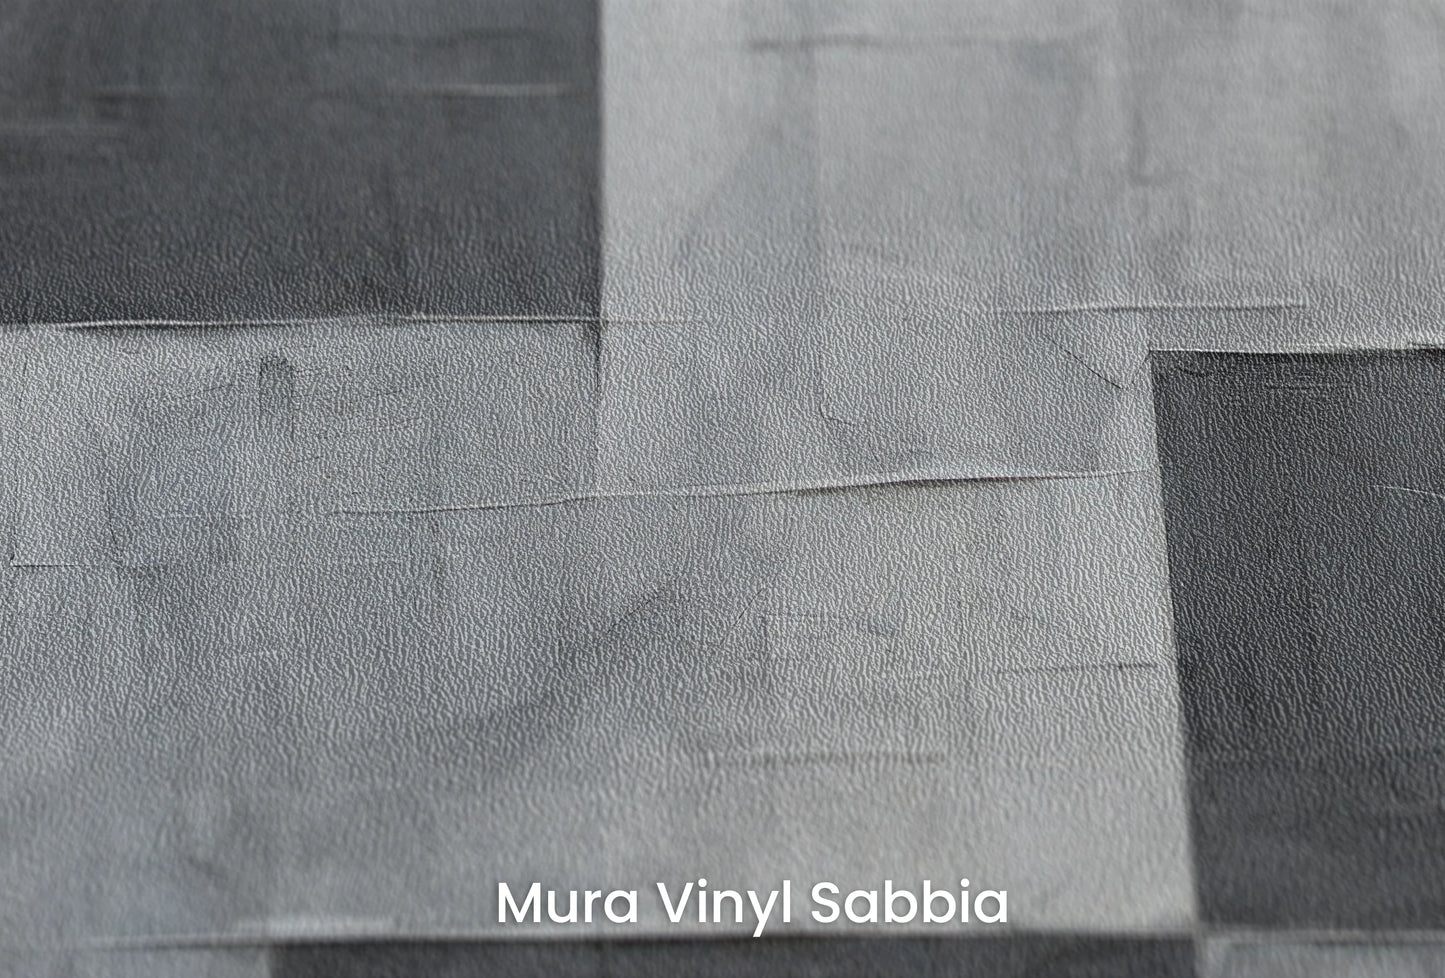 Zbliżenie na artystyczną fototapetę o nazwie Shades of Monochrome na podłożu Mura Vinyl Sabbia struktura grubego ziarna piasku.